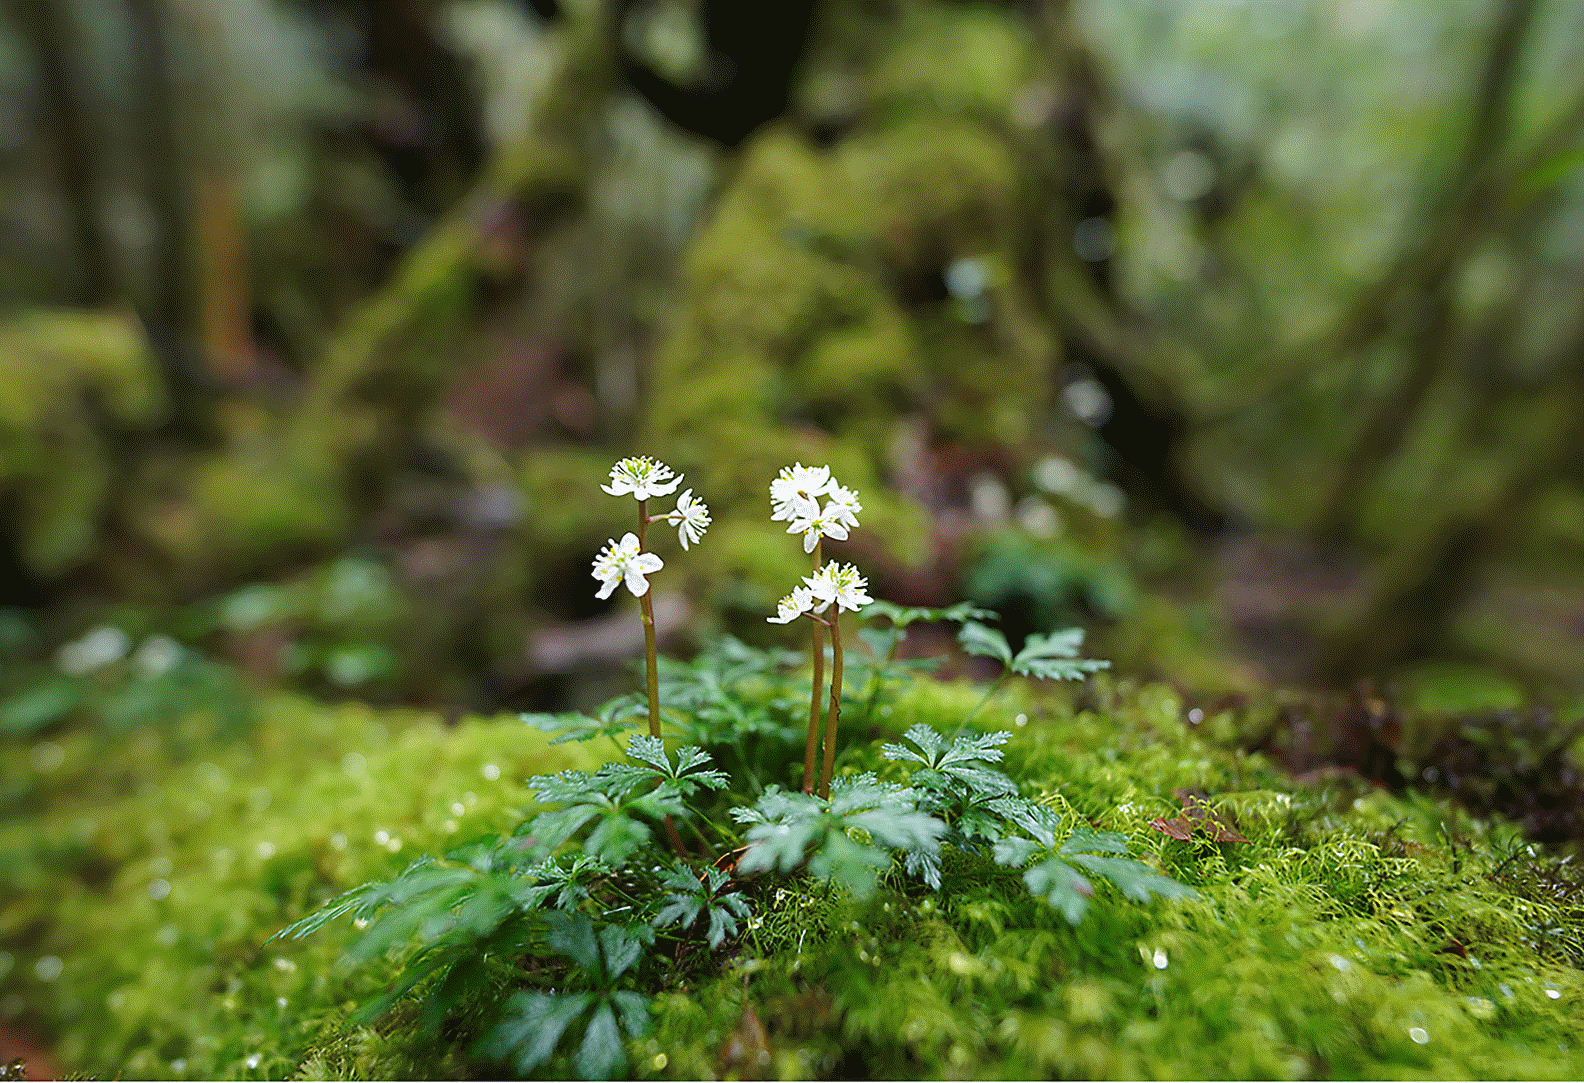 Immagina un piccolo fiore sopra un sasso, nel bosco, perfettamente a fuoco mentre lo sfondo e la parte anteriore sono sfocati